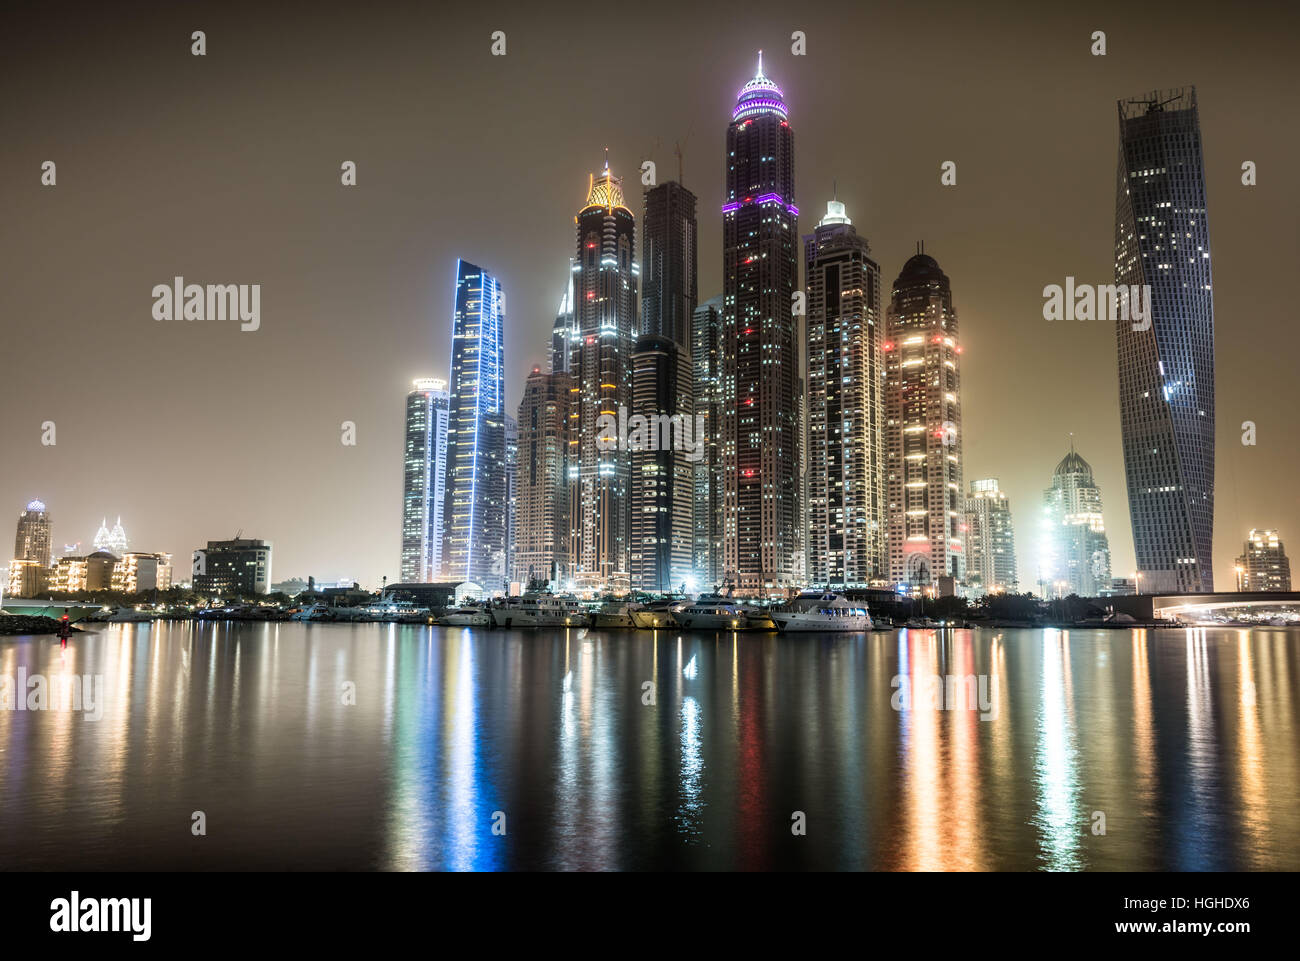 Vista nocturna del puerto deportivo de Dubai con reflejos en el puerto. Foto de stock